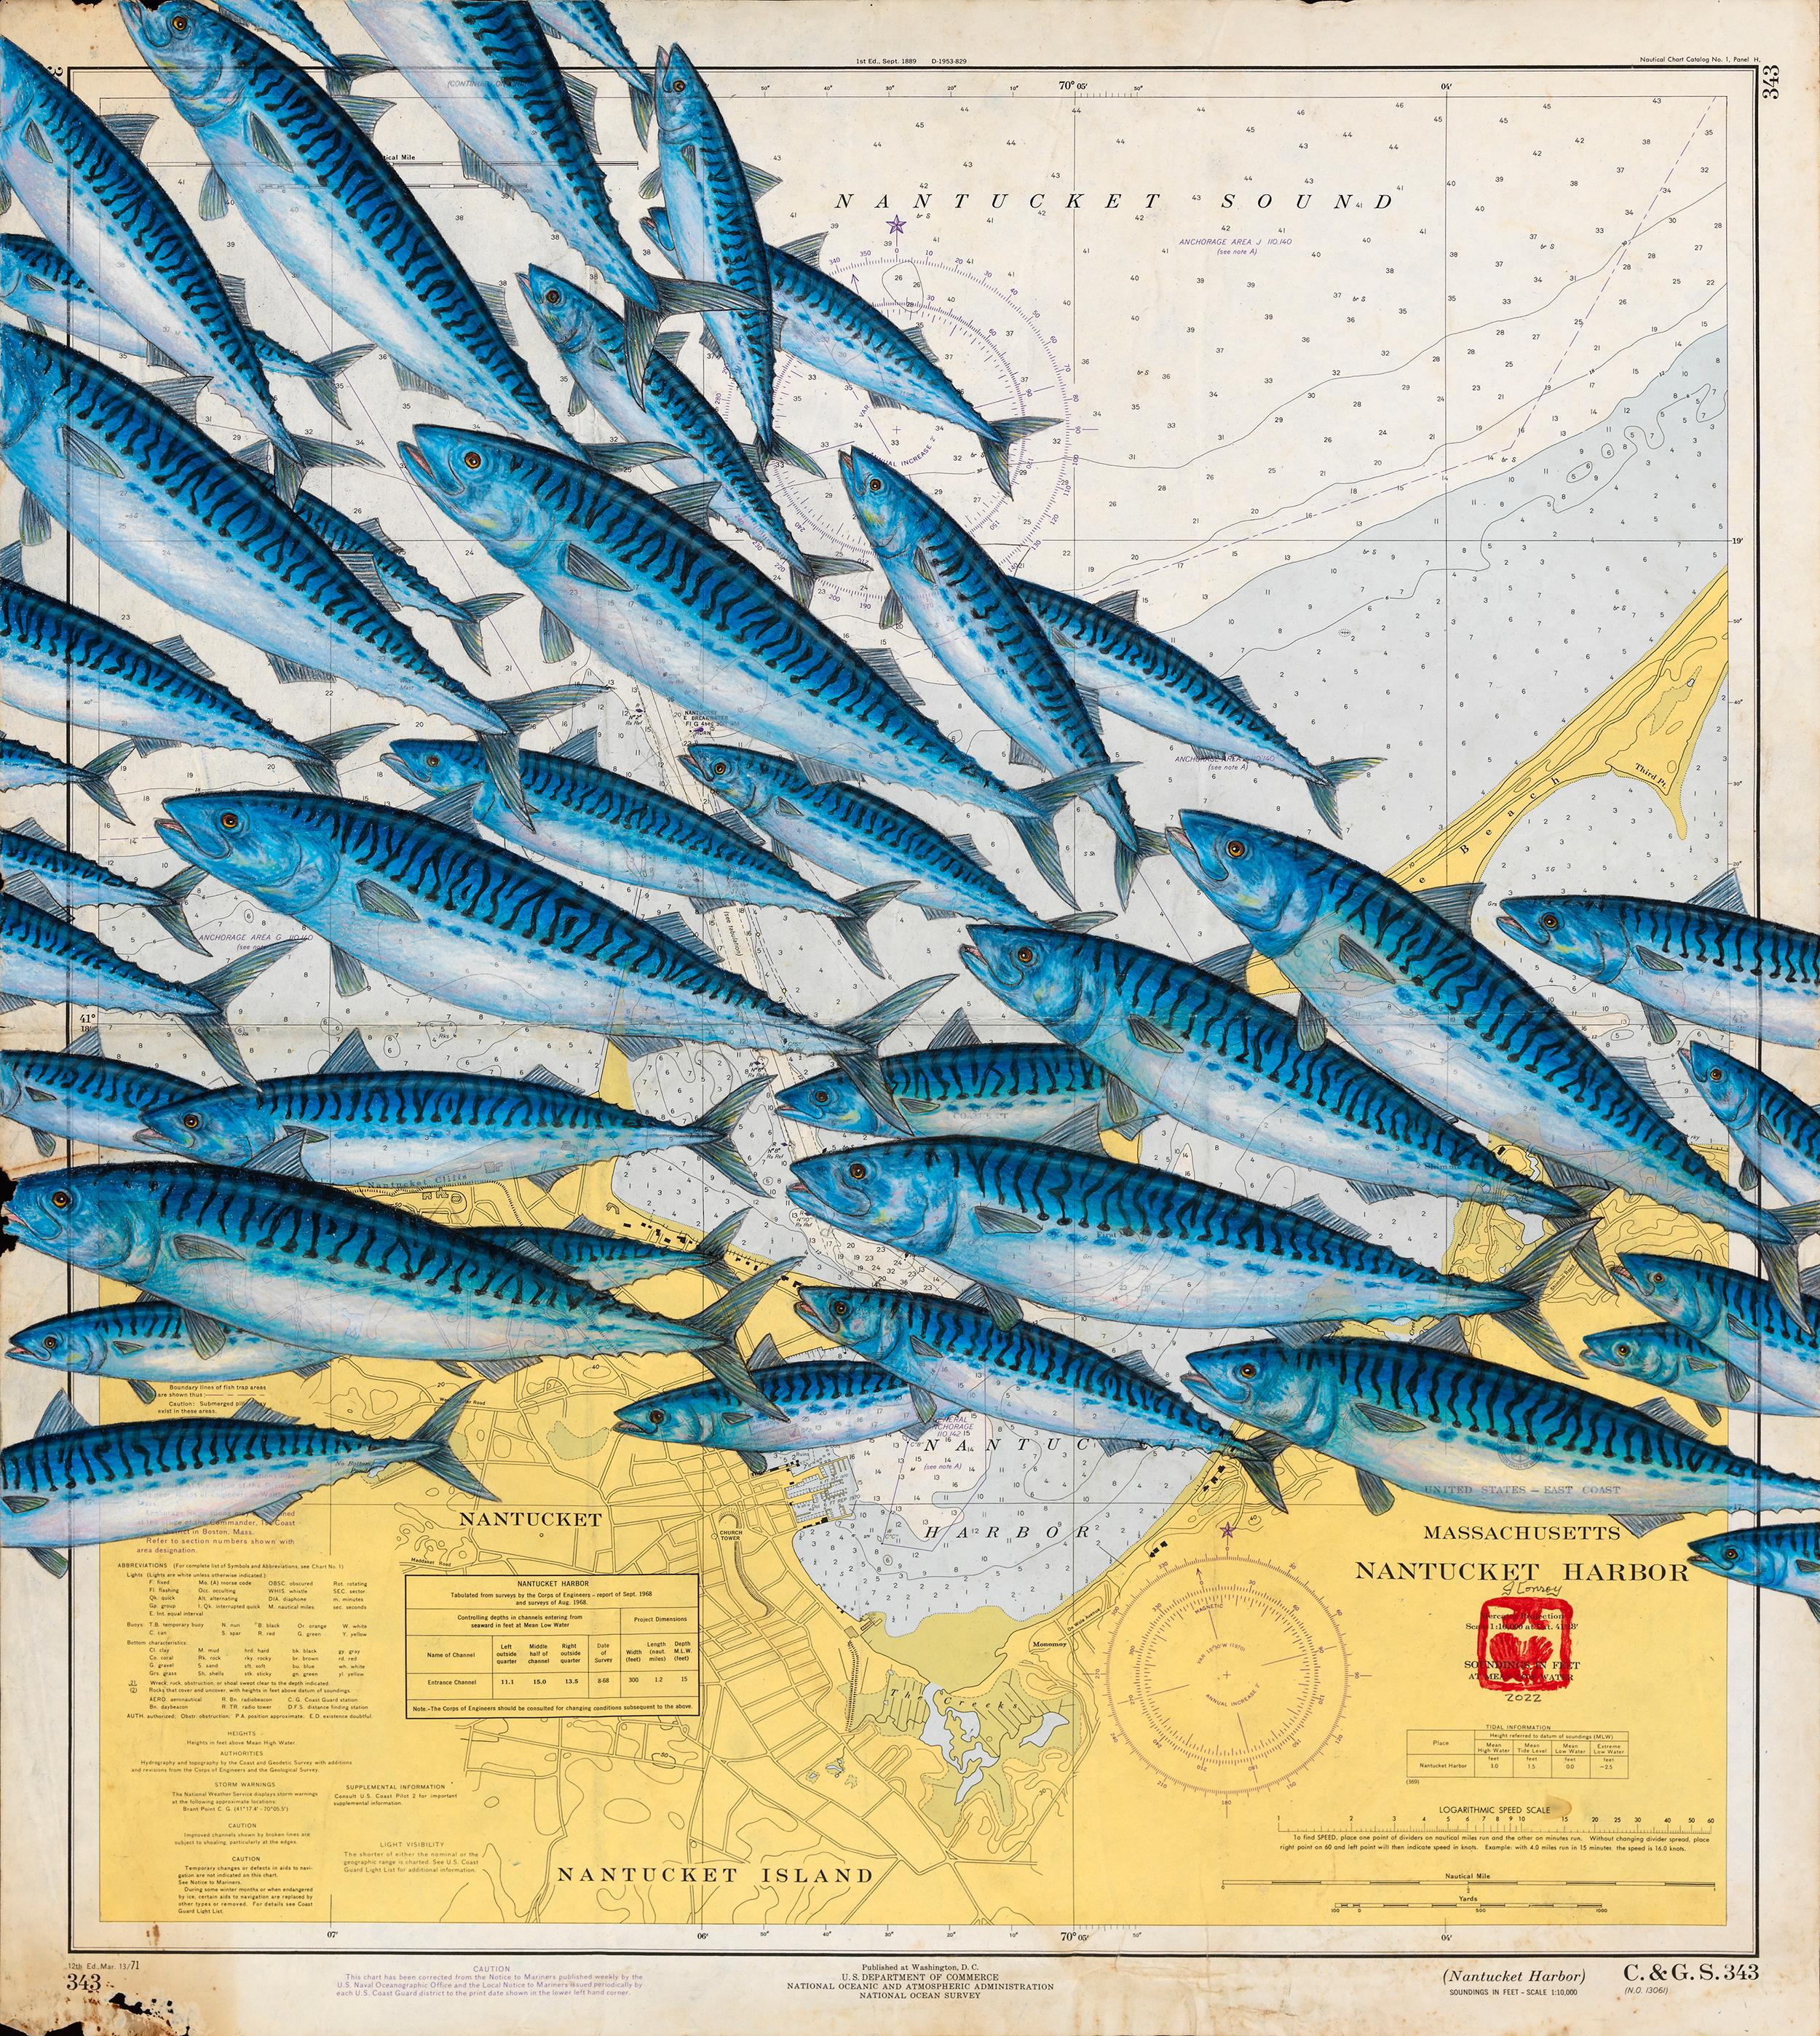 Animal Painting Jeff Conroy - Sac à maquereaux de Nantucket - Une foule de maquereaux sur une carte nautique vintage